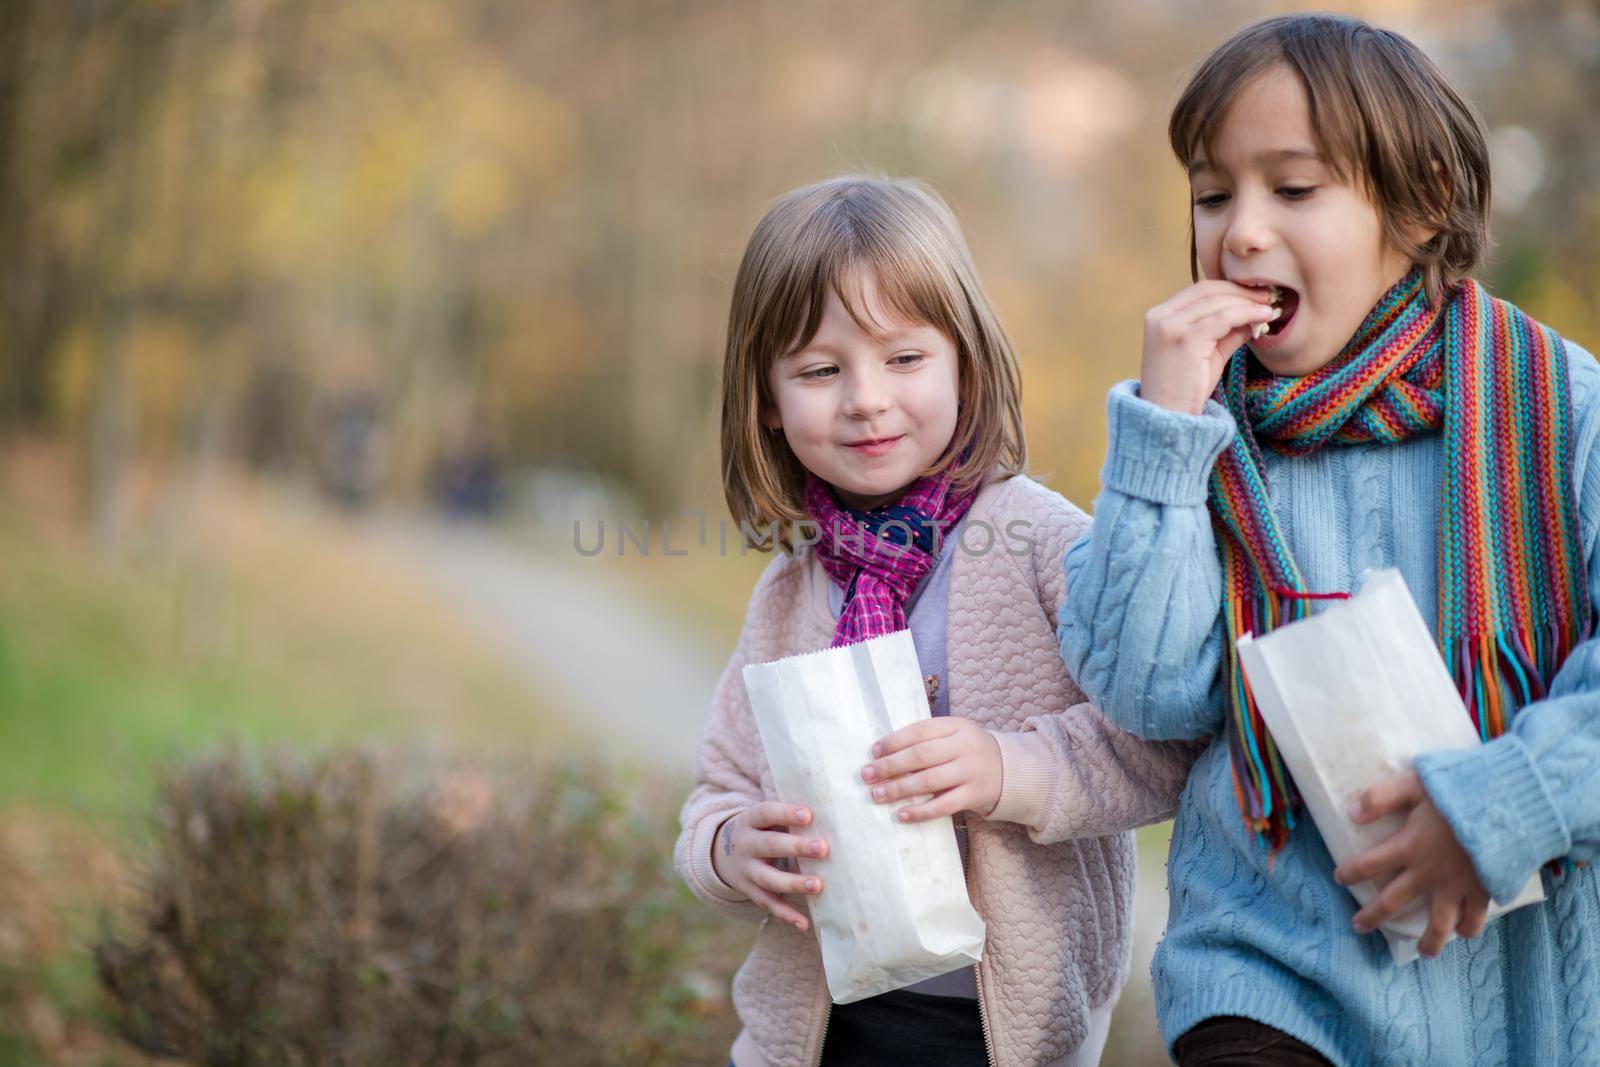 kids in park eating popcorn in park by dotshock